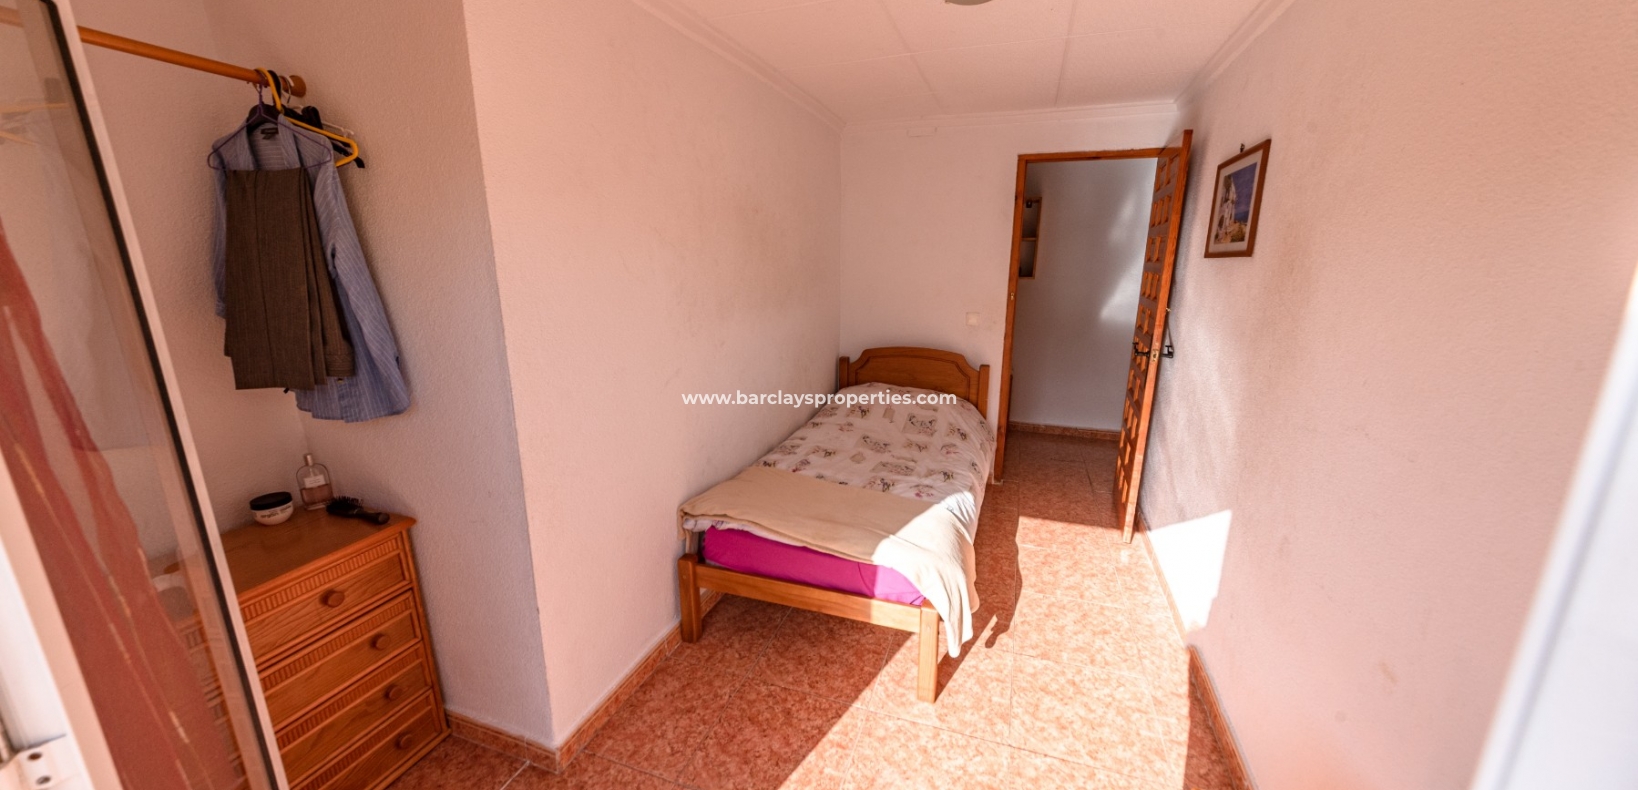 Schlafzimmer 1 - Immobilien zum Verkauf in La Marina Spanien mit Meerblick